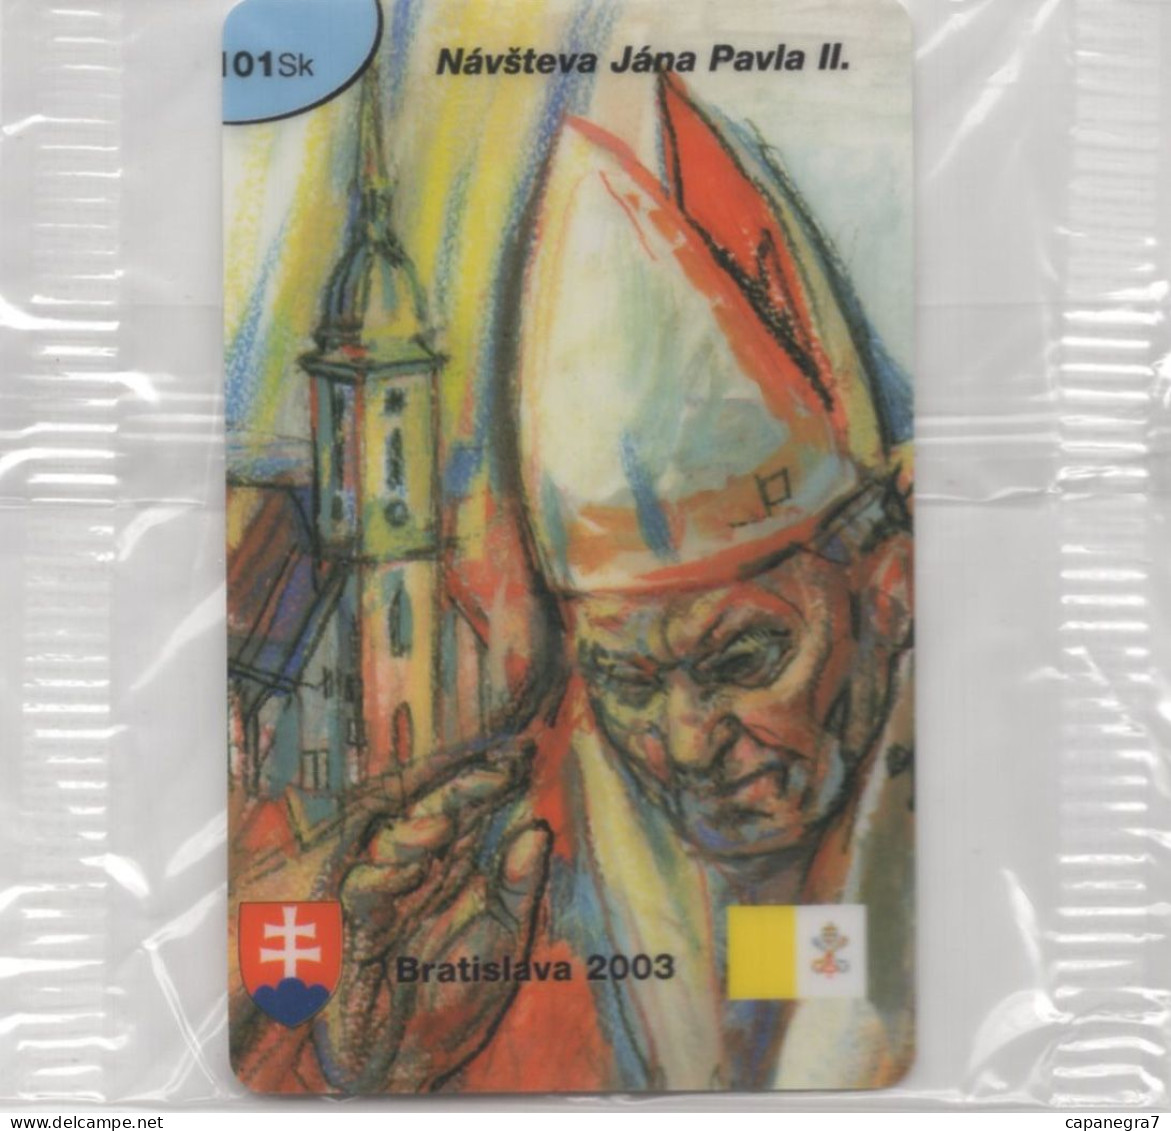 Ope John Paulu II. - Bratislava 2003, Remote Memory, Prepaid Calling Card, 101 Sk., 1.250 Pc., GlobalIPhone, Slovakia, M - Slovacchia